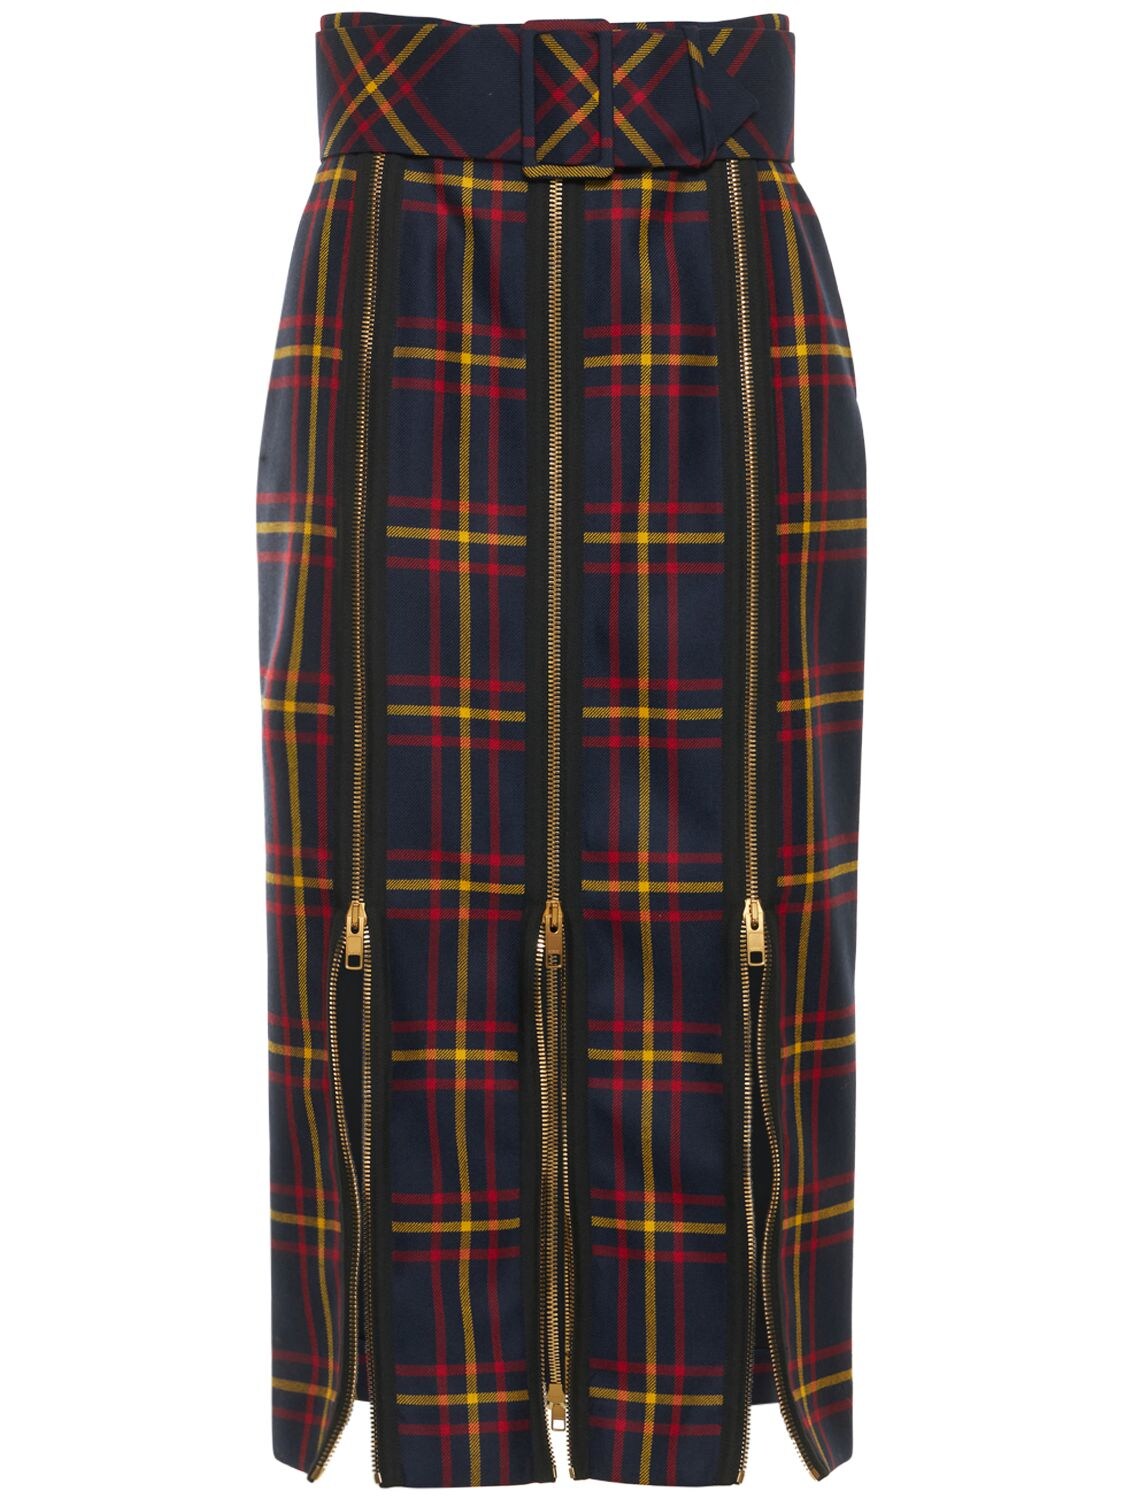 GUCCI Tartan Wool Skirt